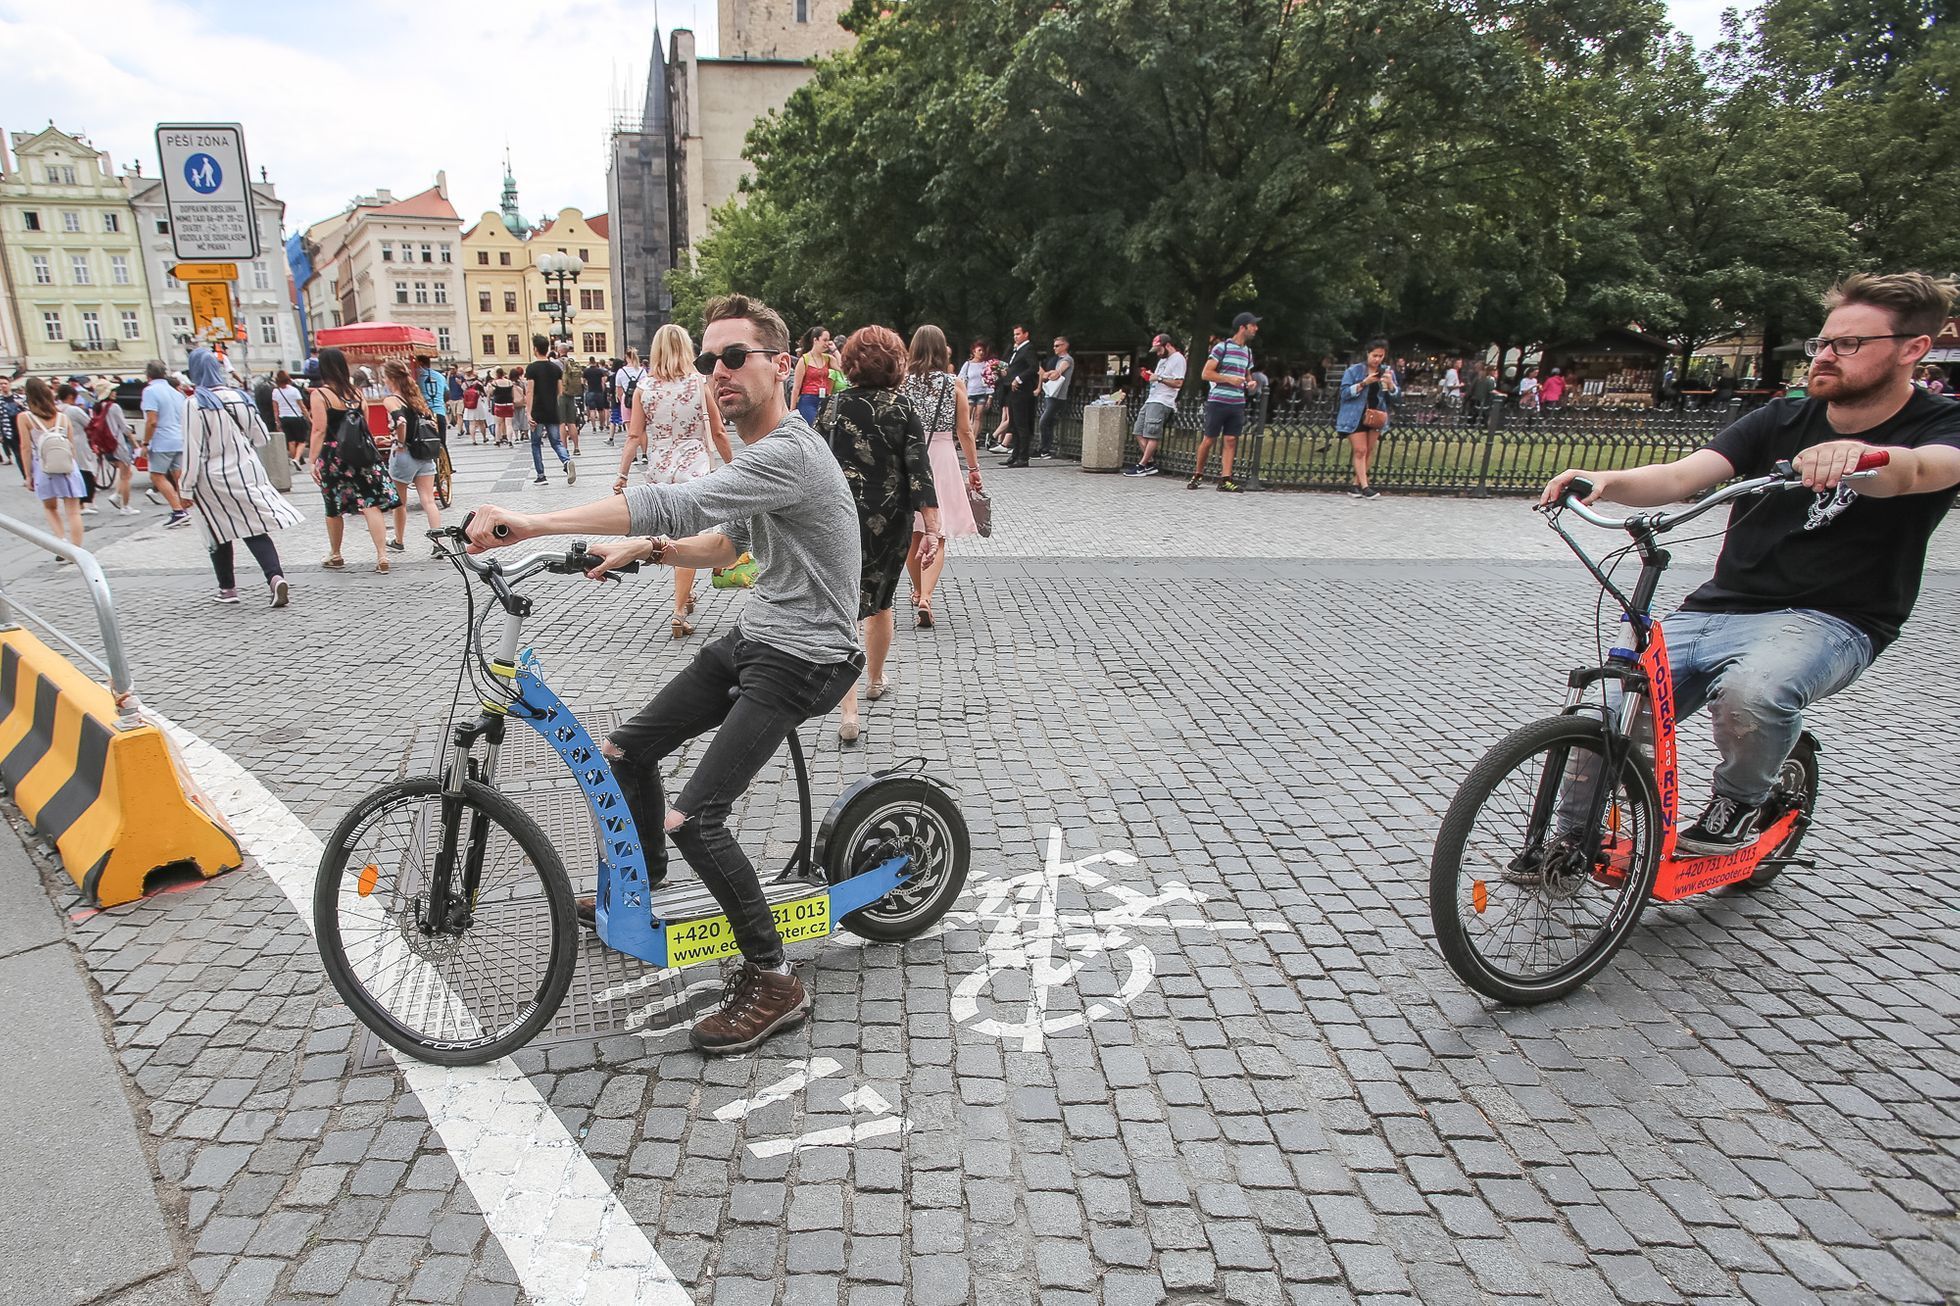 Zákaz a omezení cyklistů na Praze 1